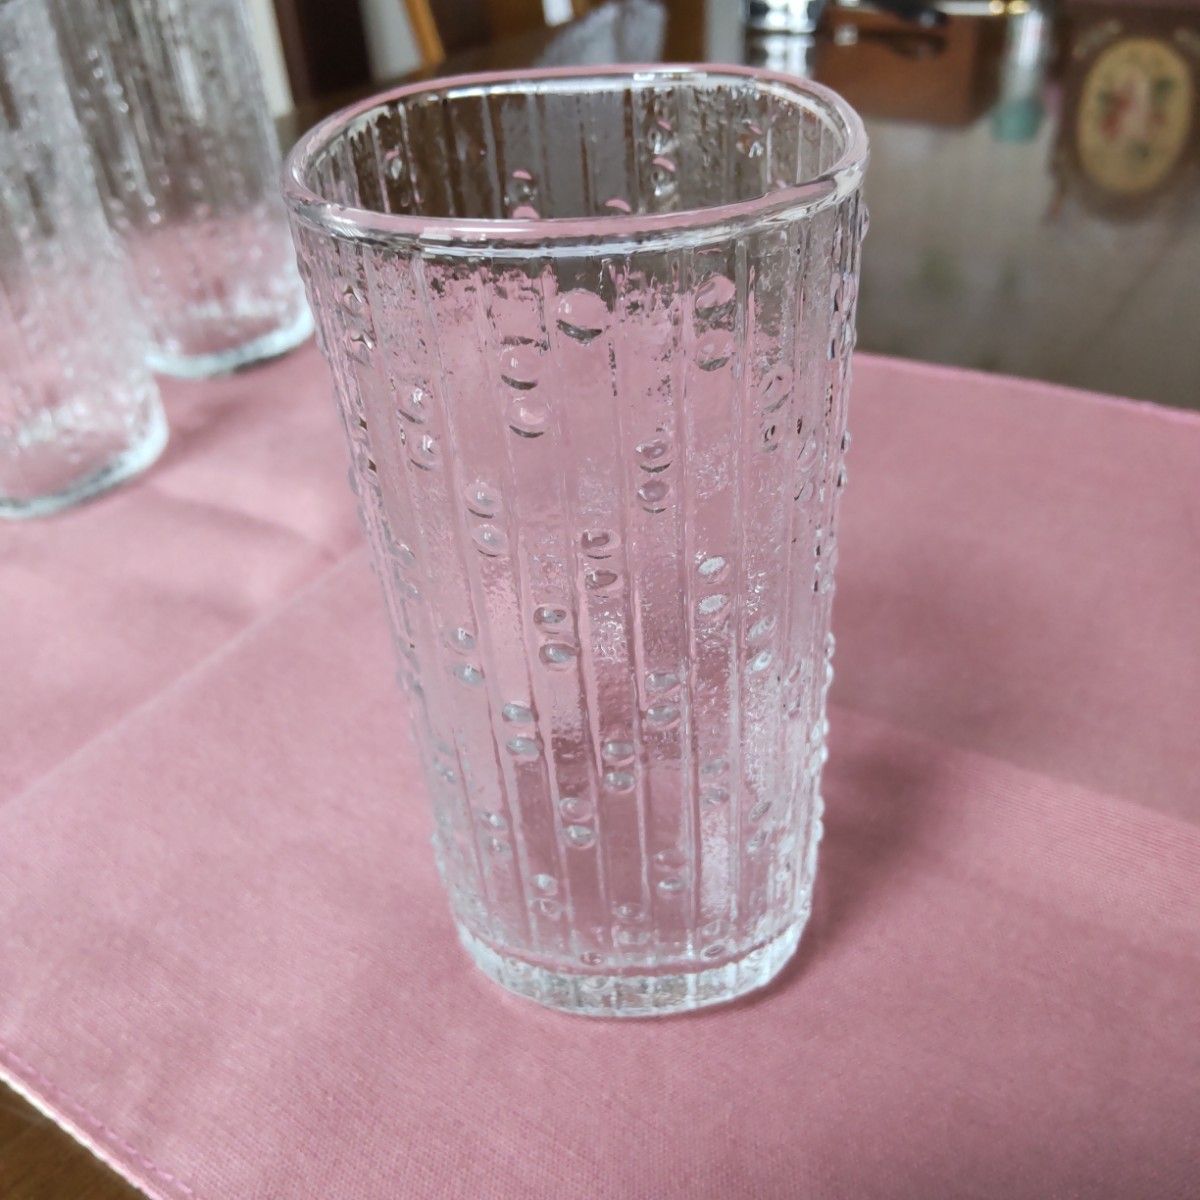 東洋佐々木ガラス刻印付きガラスコップ5つ 昭和レトロ